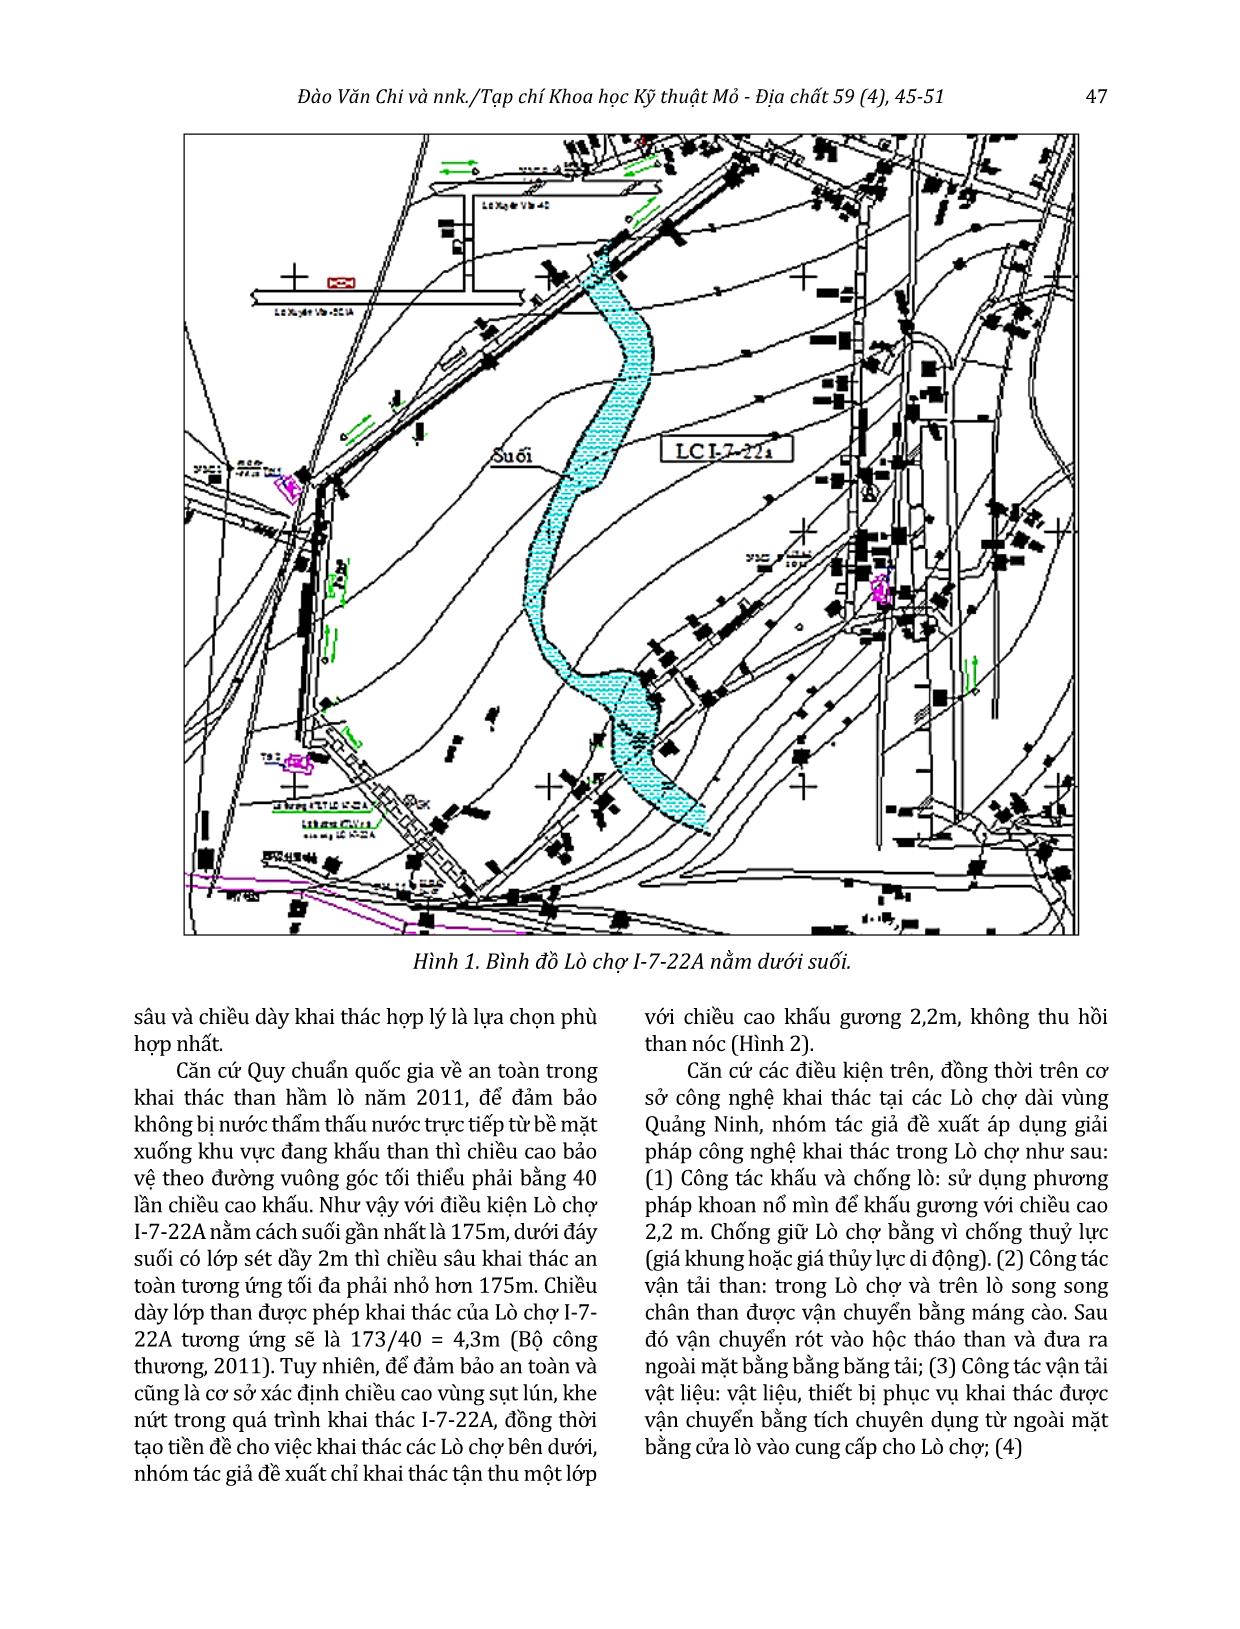 Nghiên cứu công nghệ khai thác hợp lý và đề xuất giải pháp thoát nước cho Lò chợ I-7-22A nằm dưới suối gốc Vạng - Công ty than Nam Mẫu - TKV trang 3